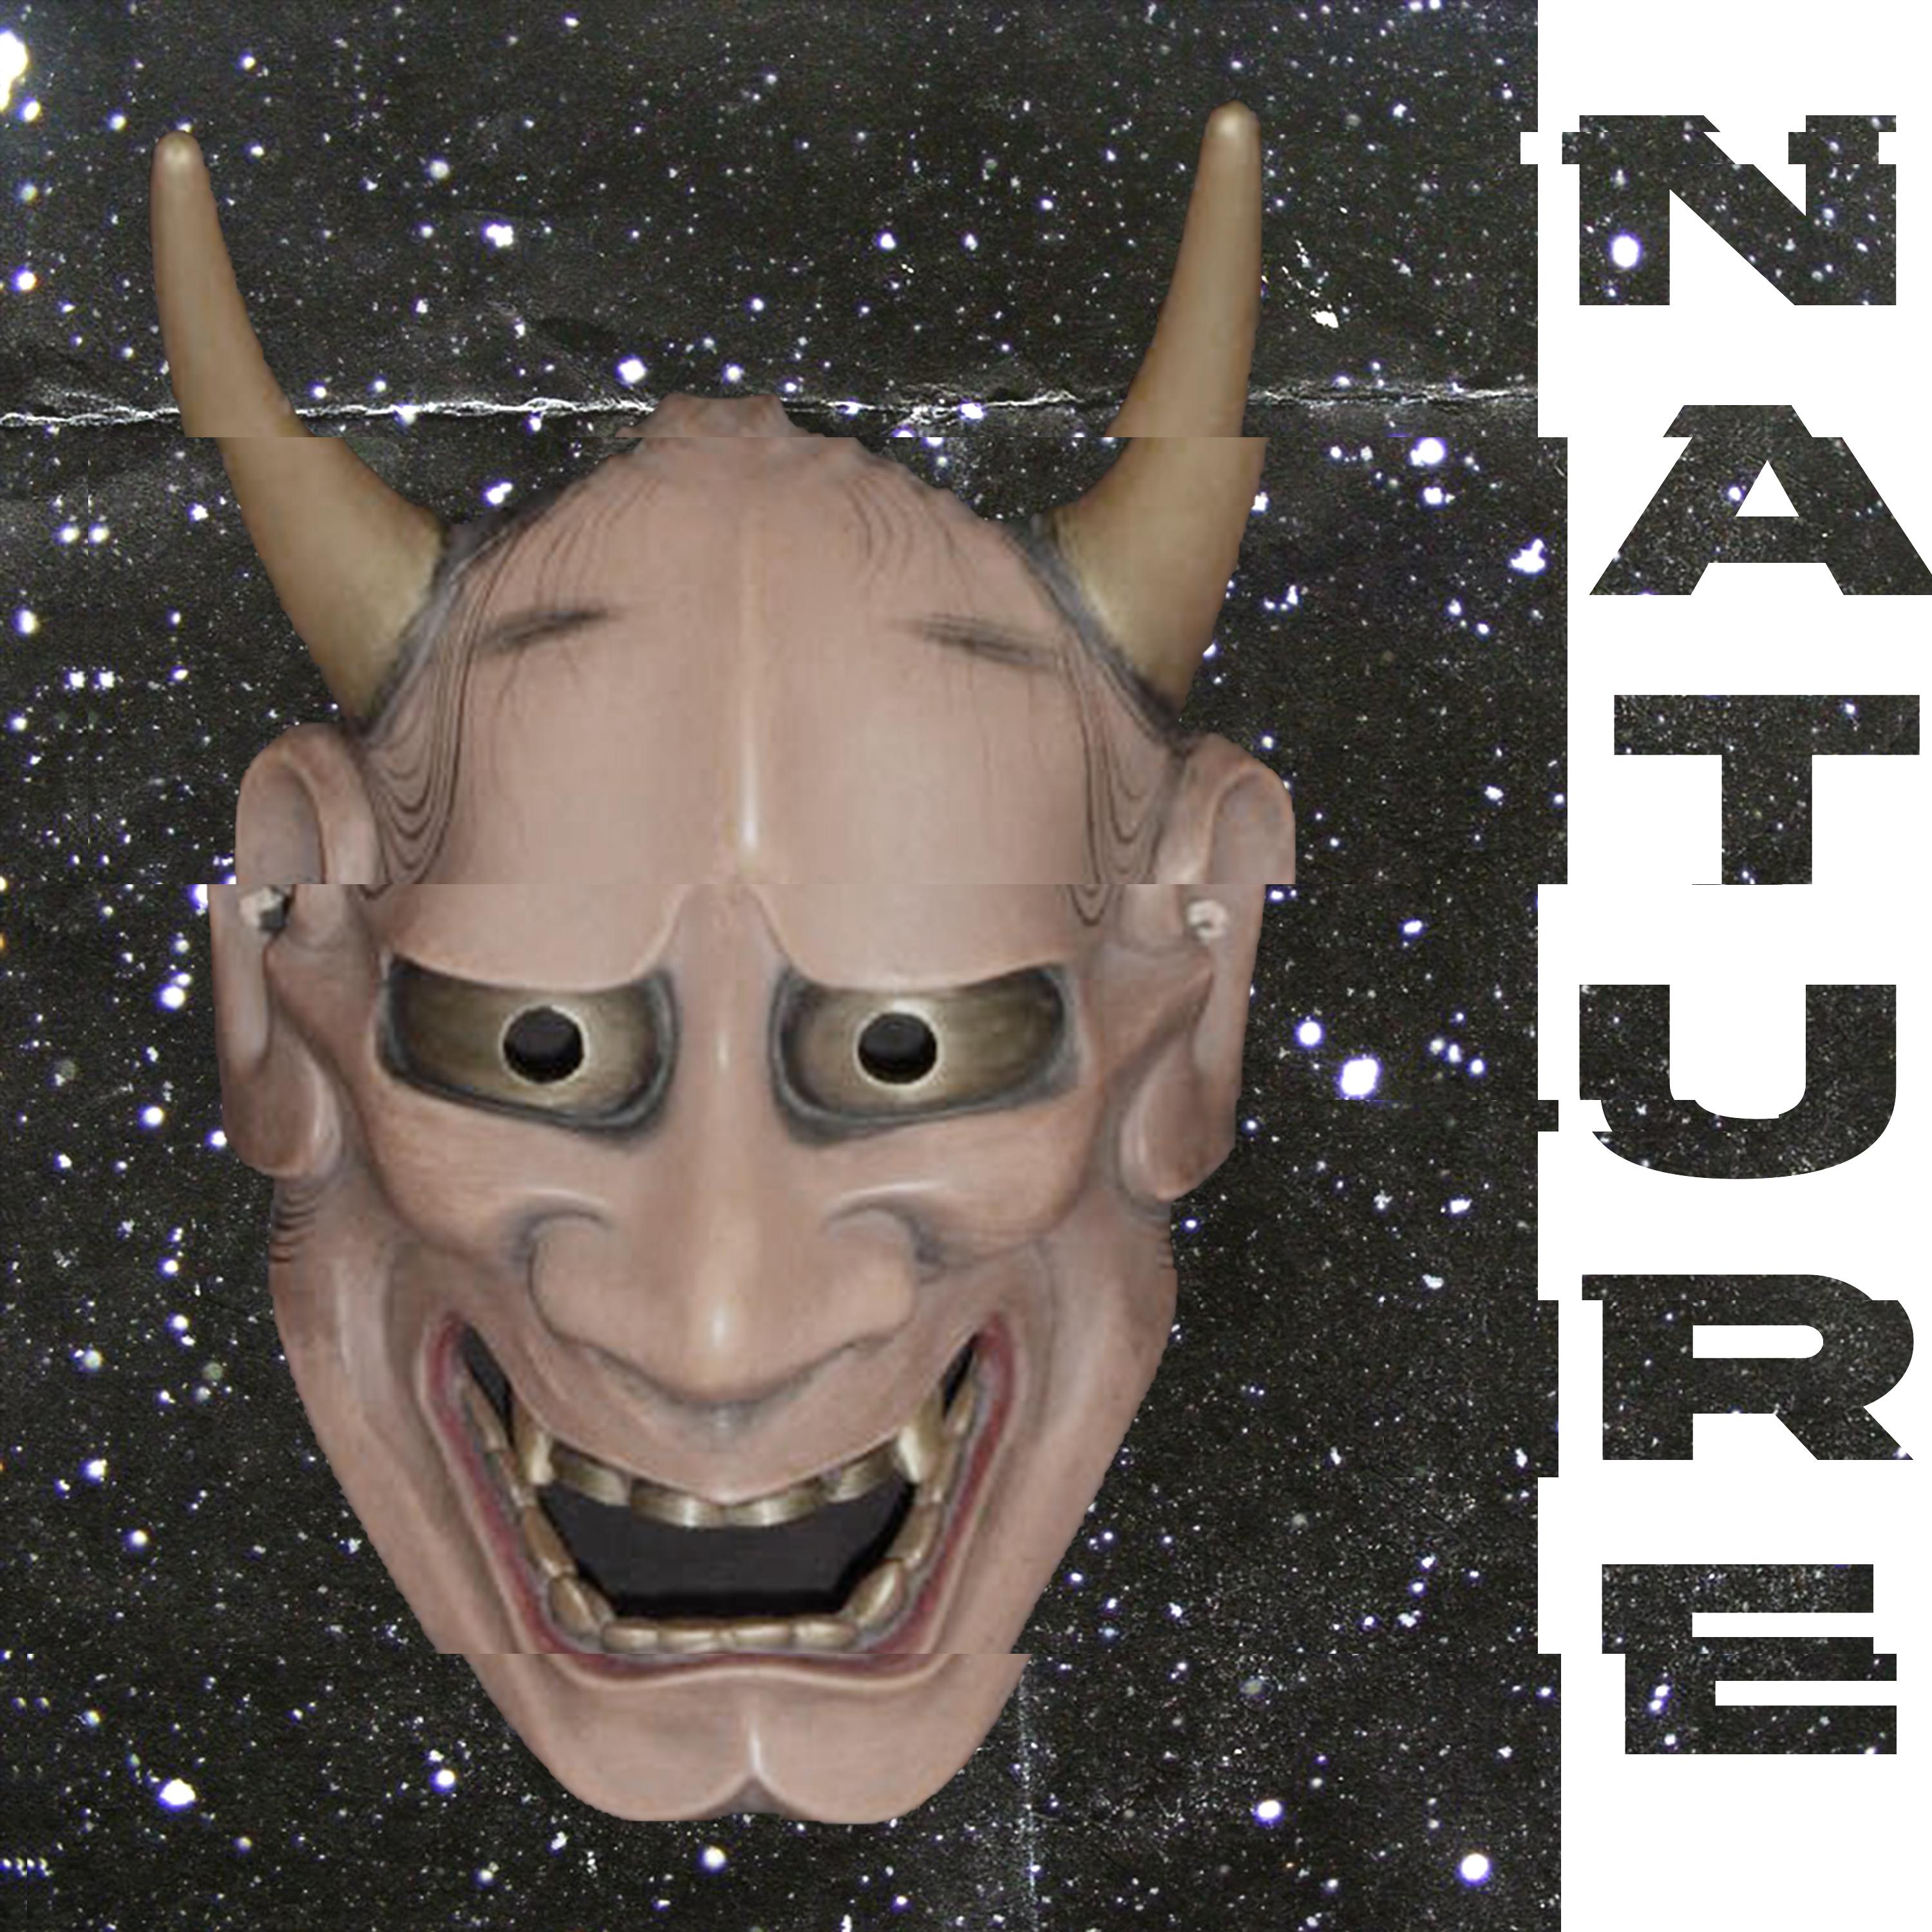 Постер альбома NATURE